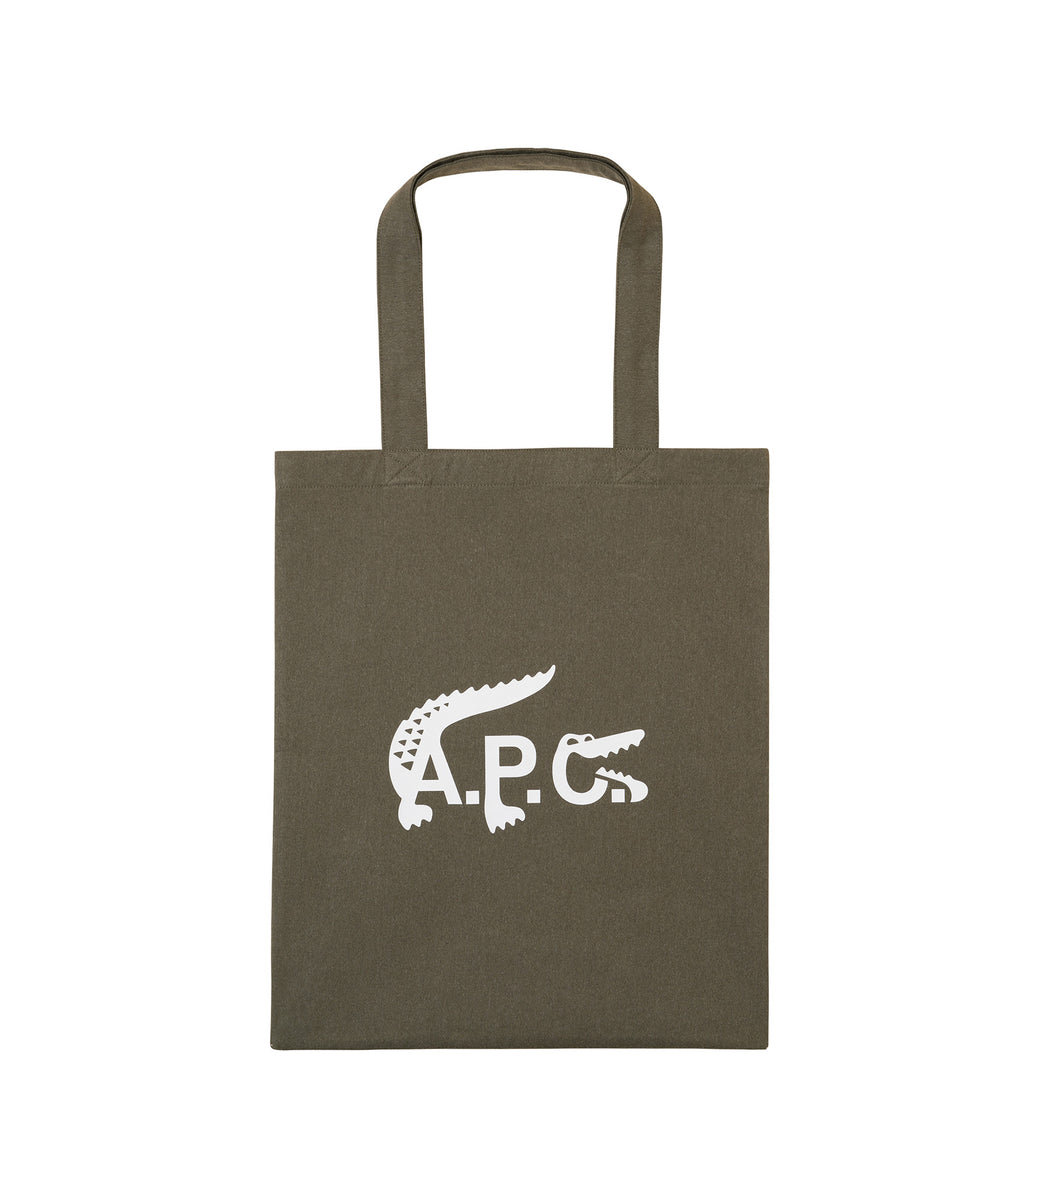 A.P.C. x Lacoste Tote Bag Khaki Green